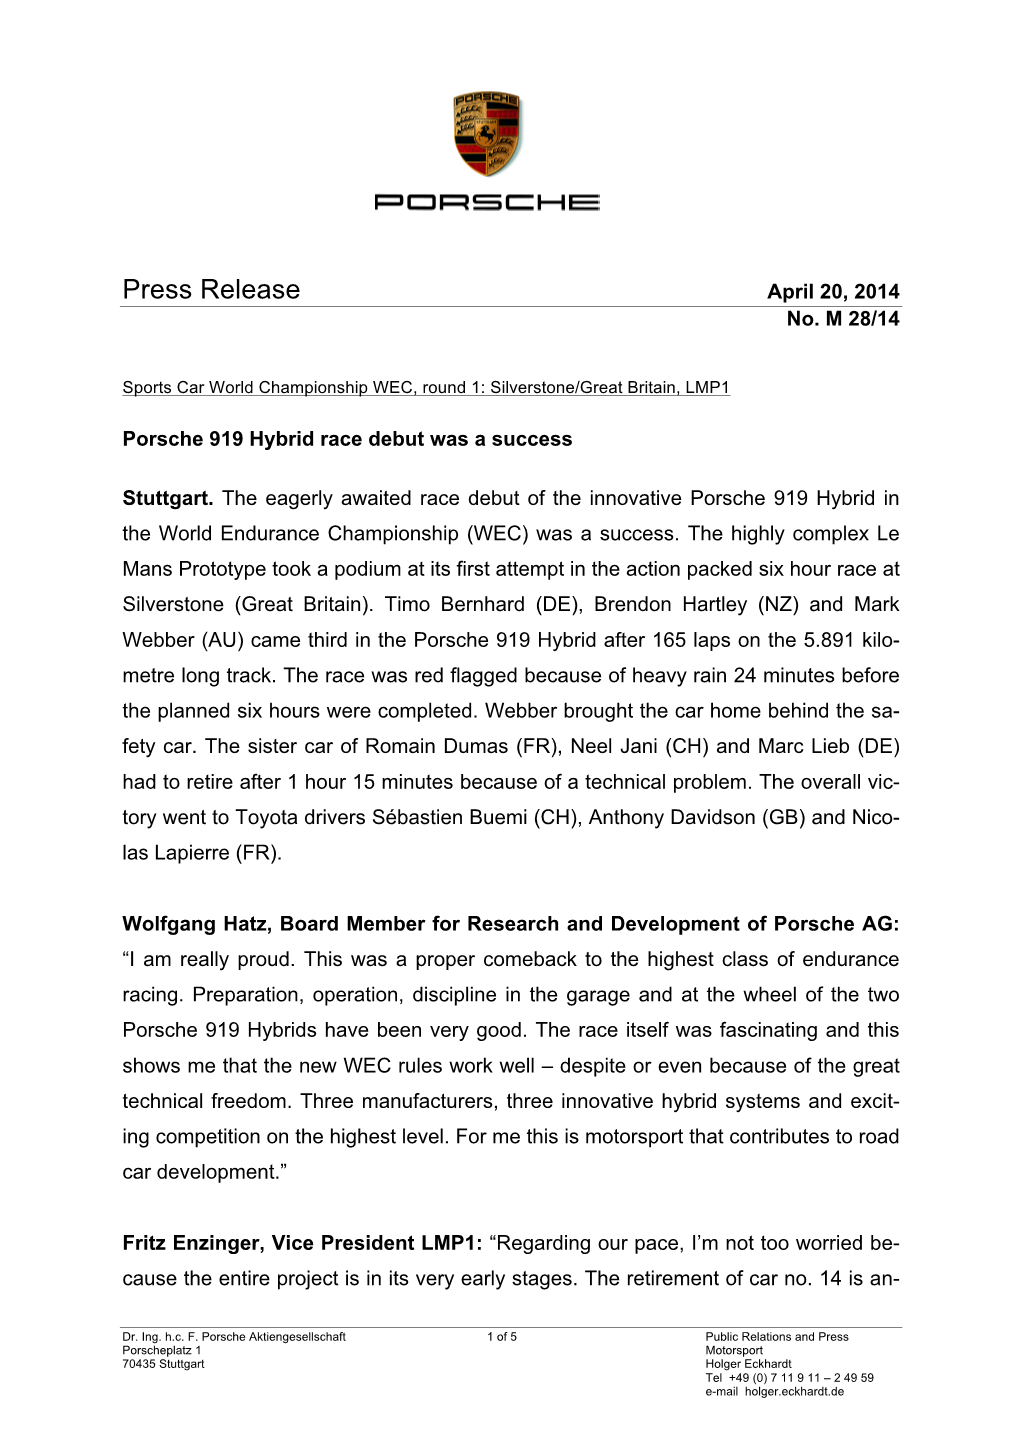 Press Release April 20, 2014 No